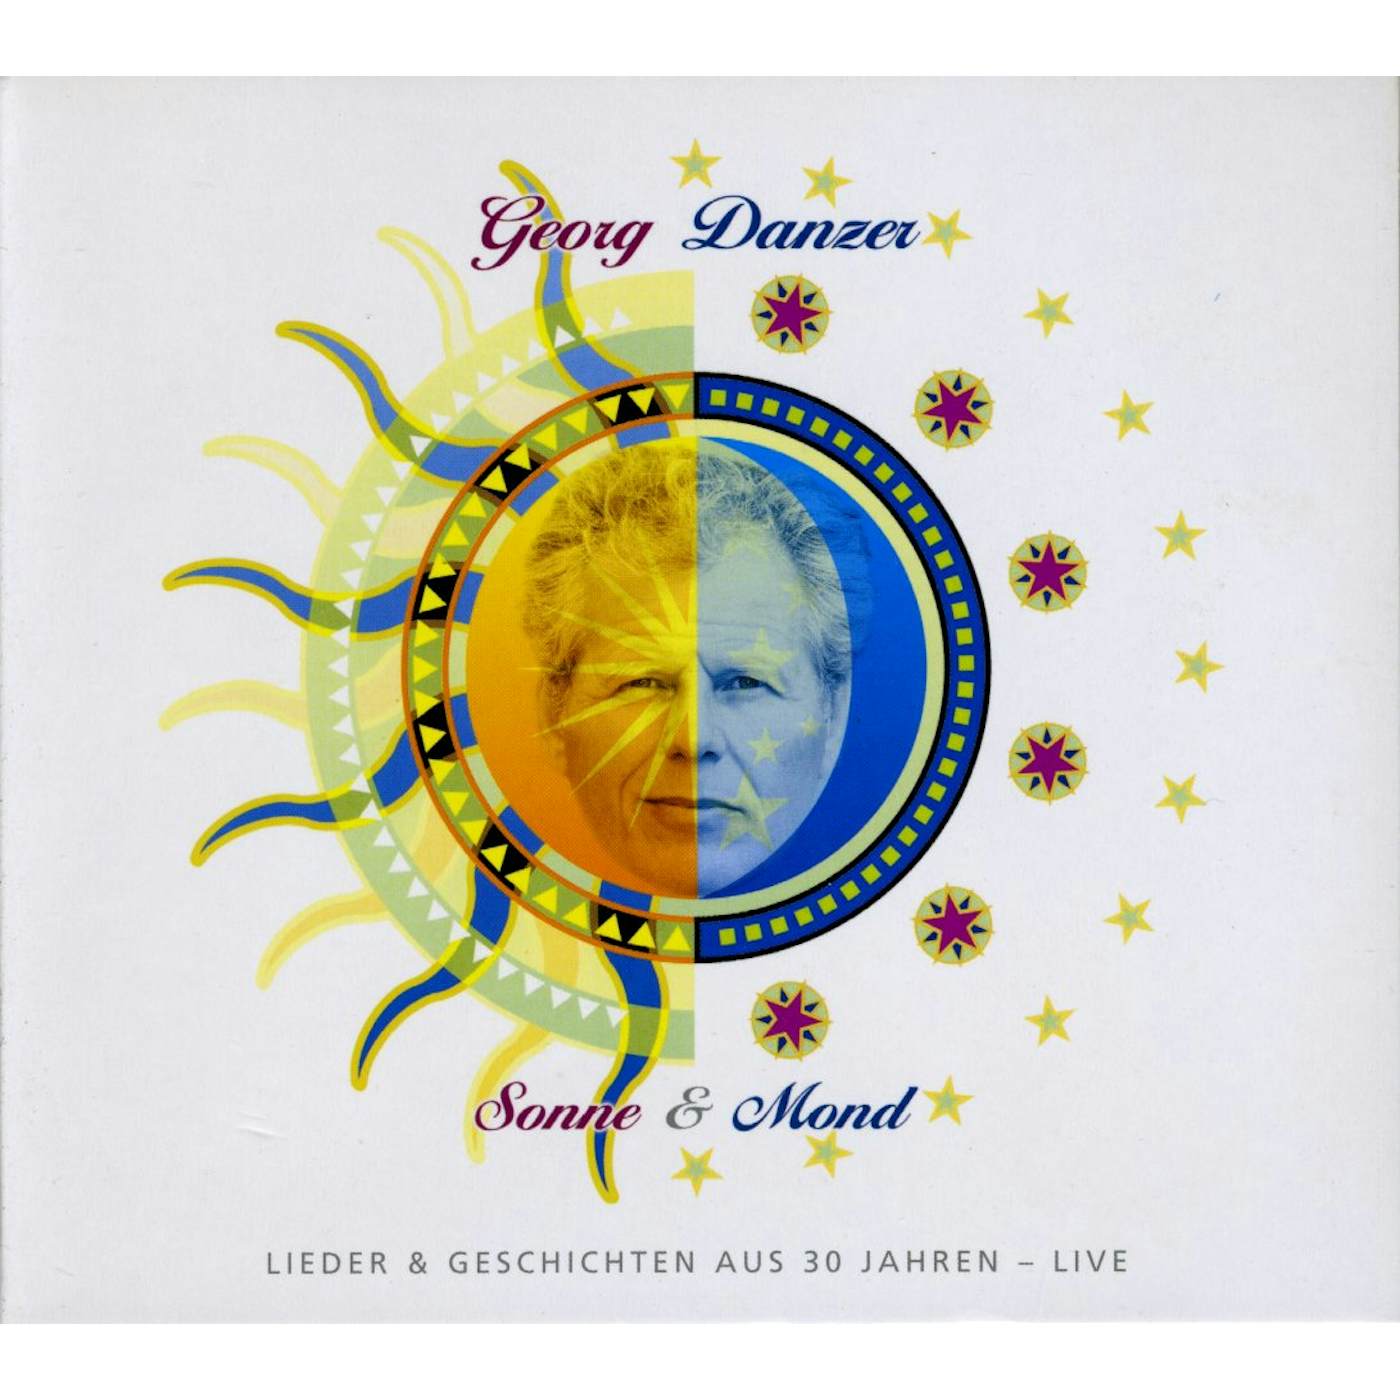 Georg Danzer SONNE & MOND LIEDER & GESCHICHTEN AUS CD